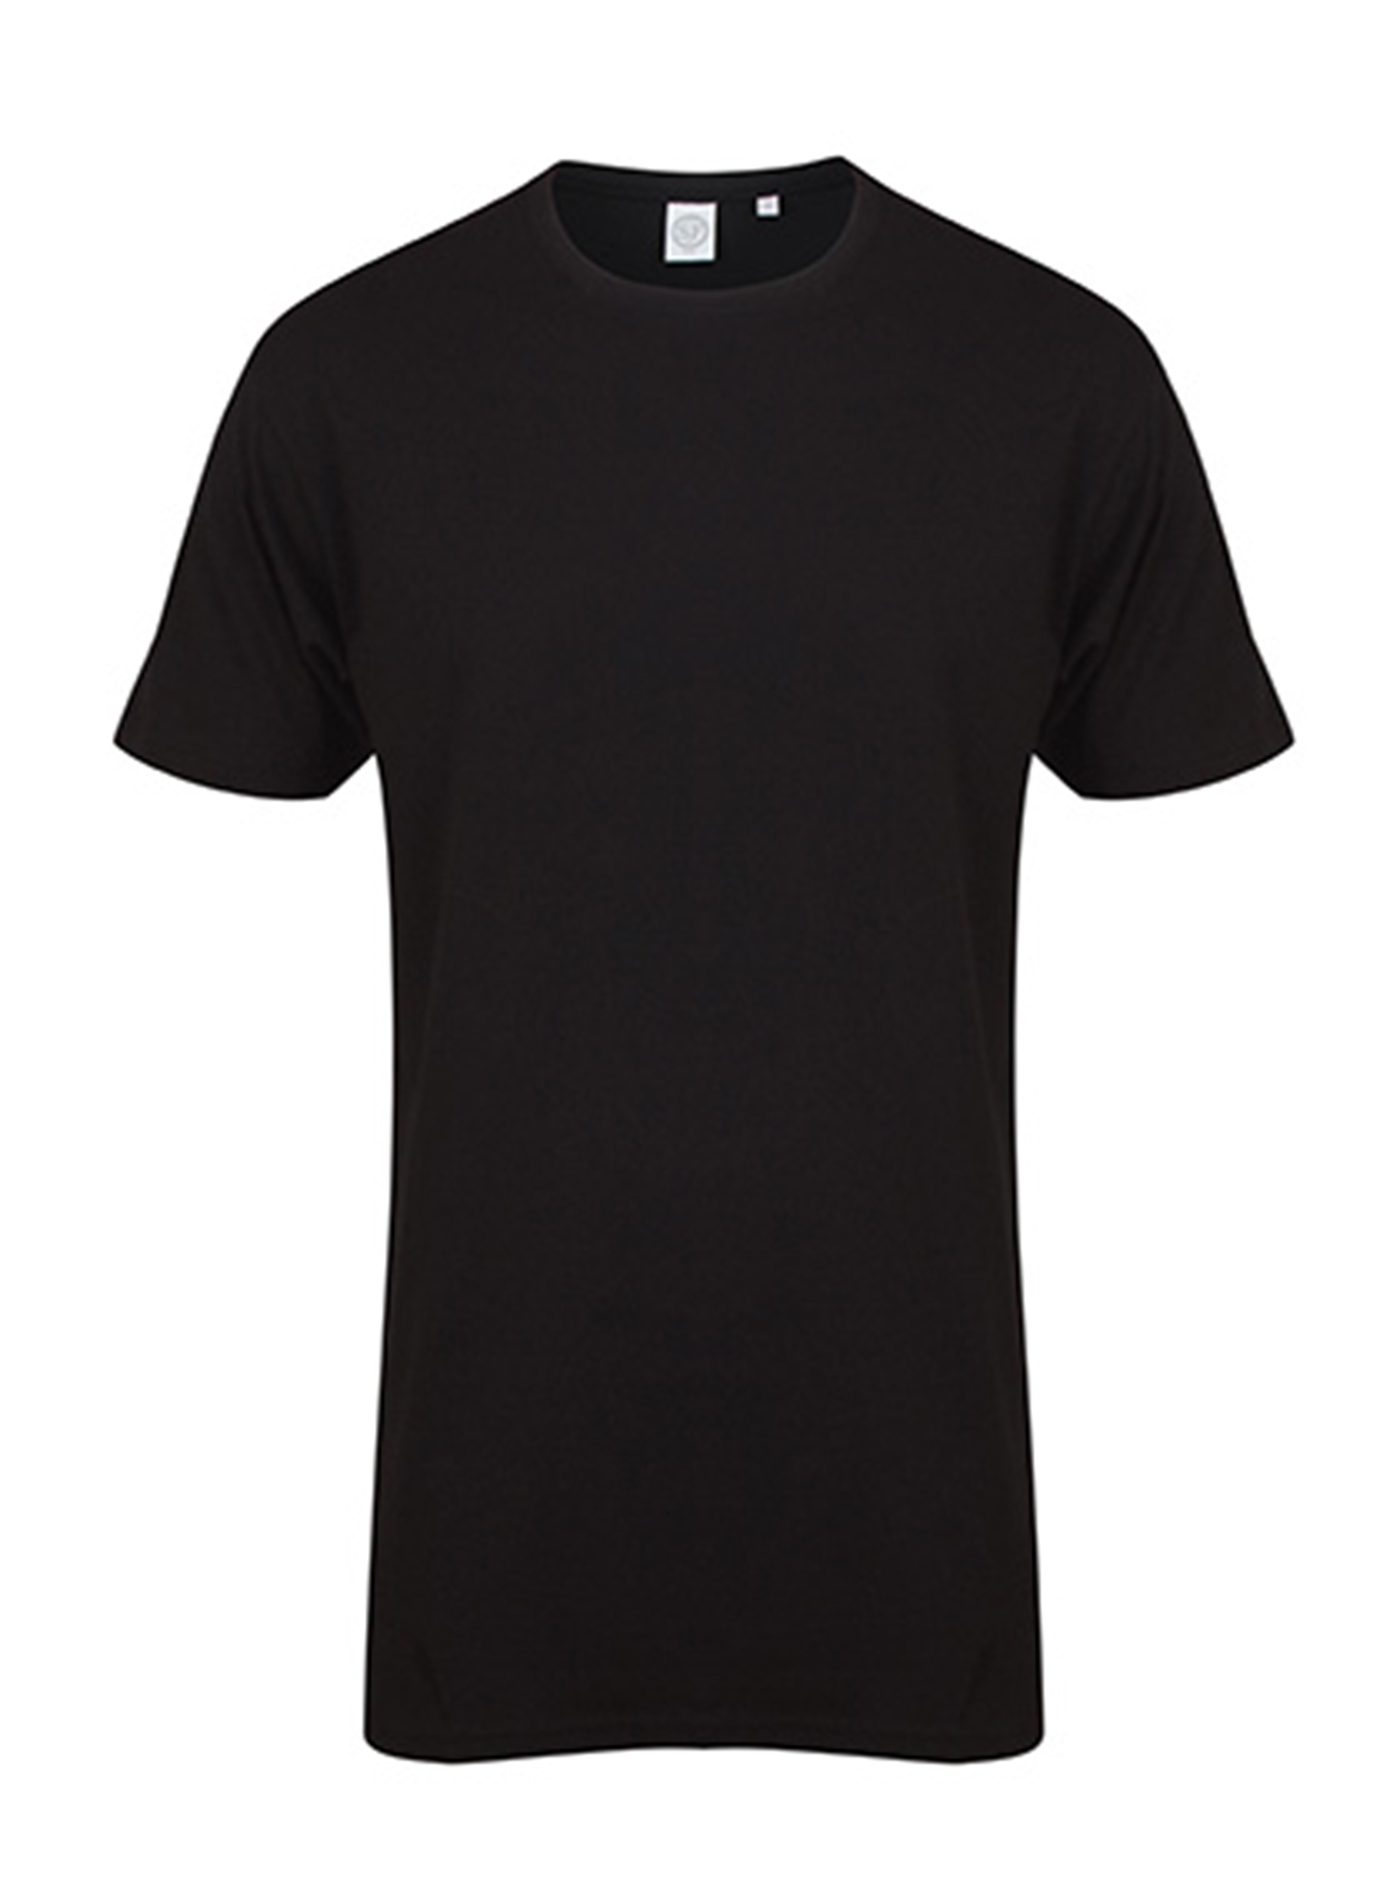 Pánské tričko s prodlouženým zadním dílem Skinnifit Longline T - černá M